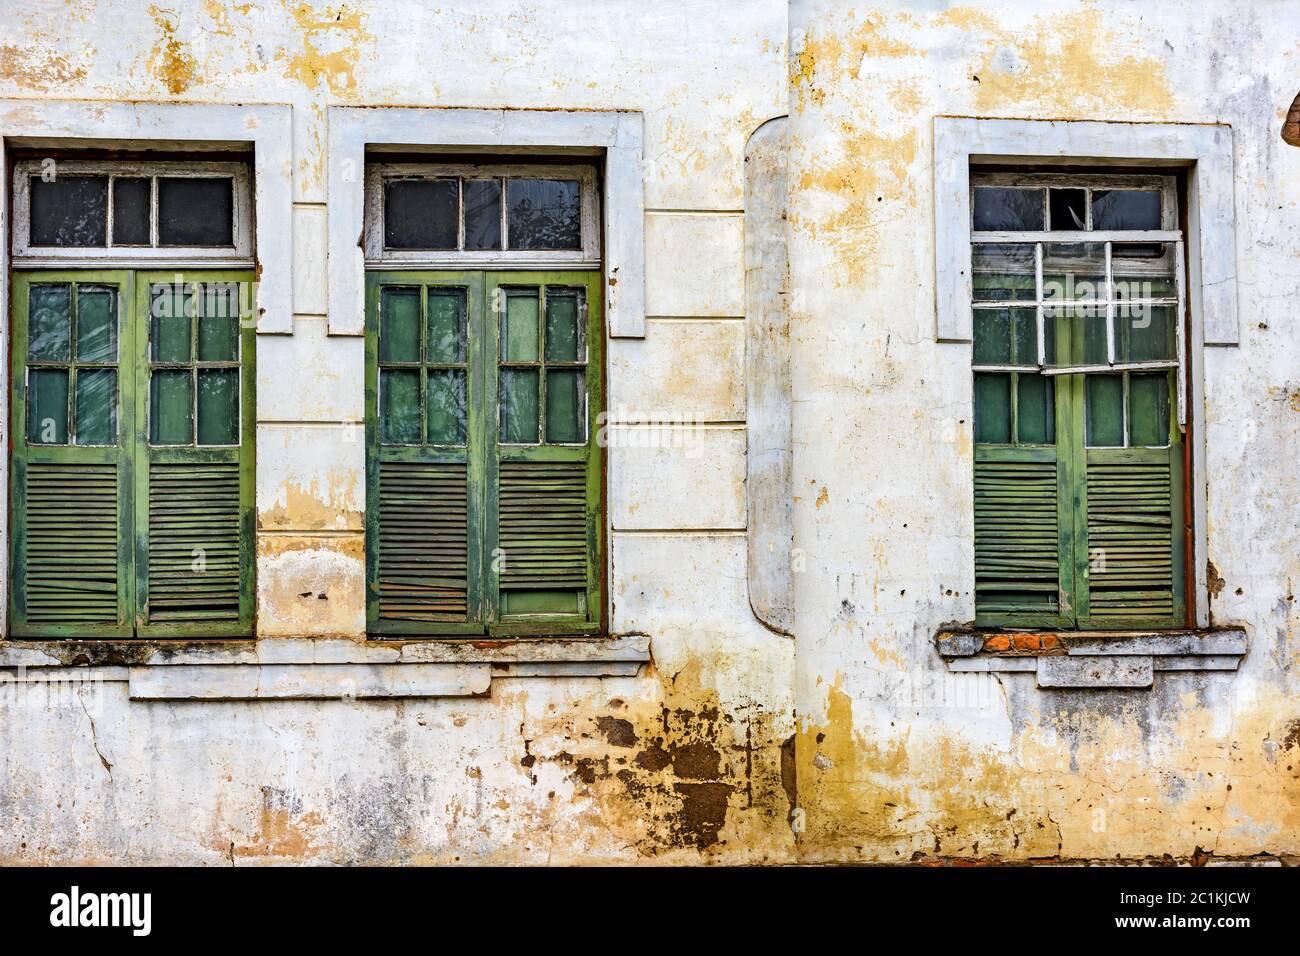 Fachada y ventanas de casas antiguas dañadas construidas en la ciudad de Ouro Preto Foto de stock